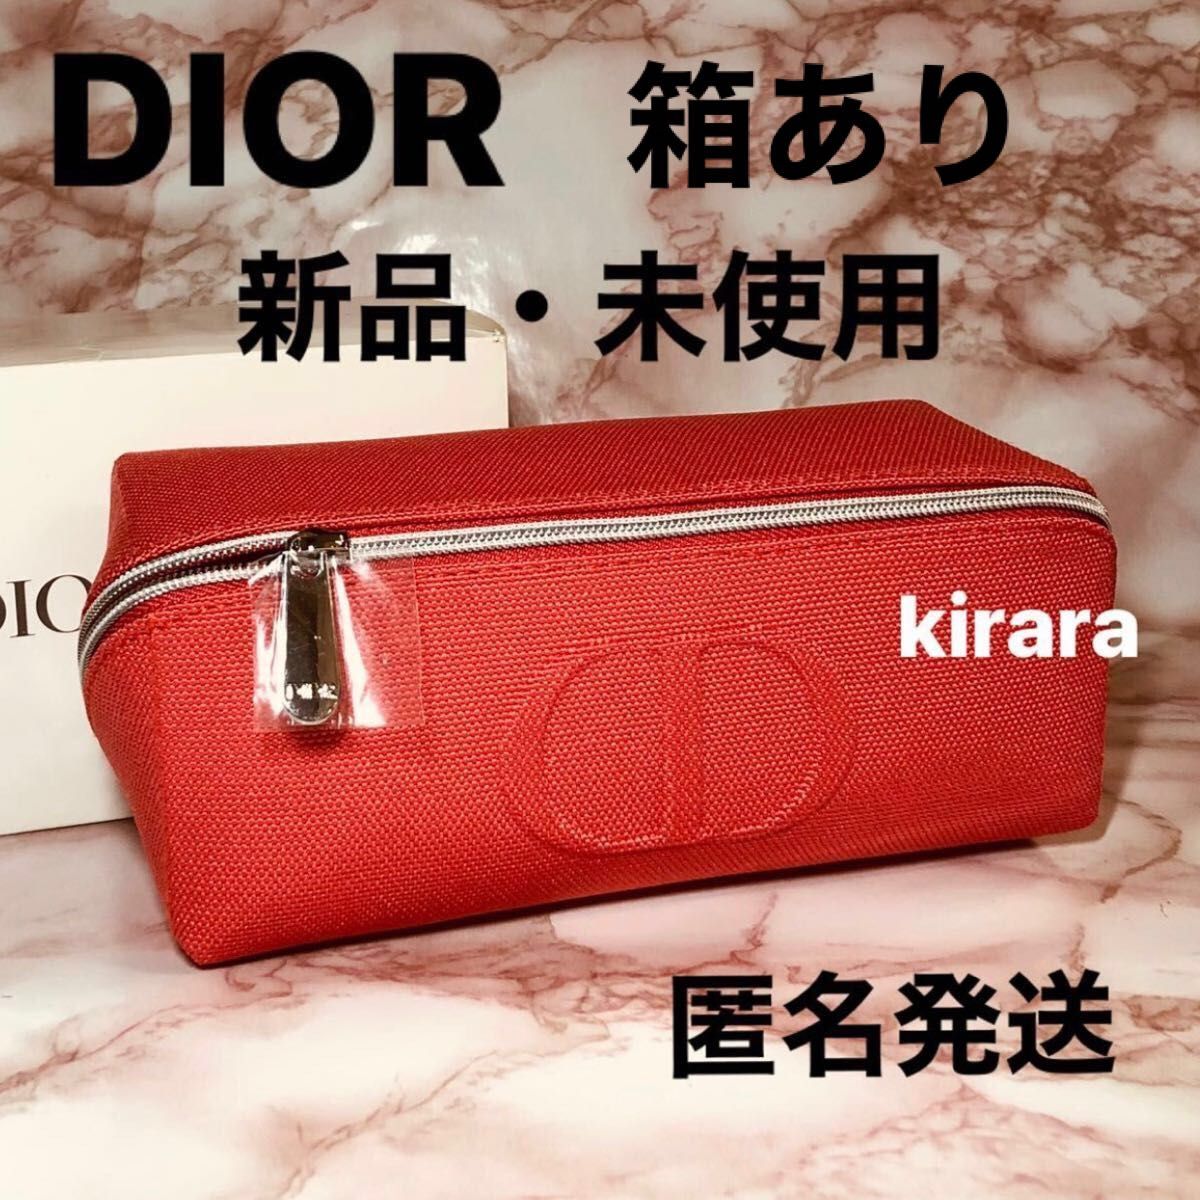 【新品・未使用・箱あり】dior ディオール ポーチ ノベルティ 日本未入荷 スクエア型 レッド 正規品